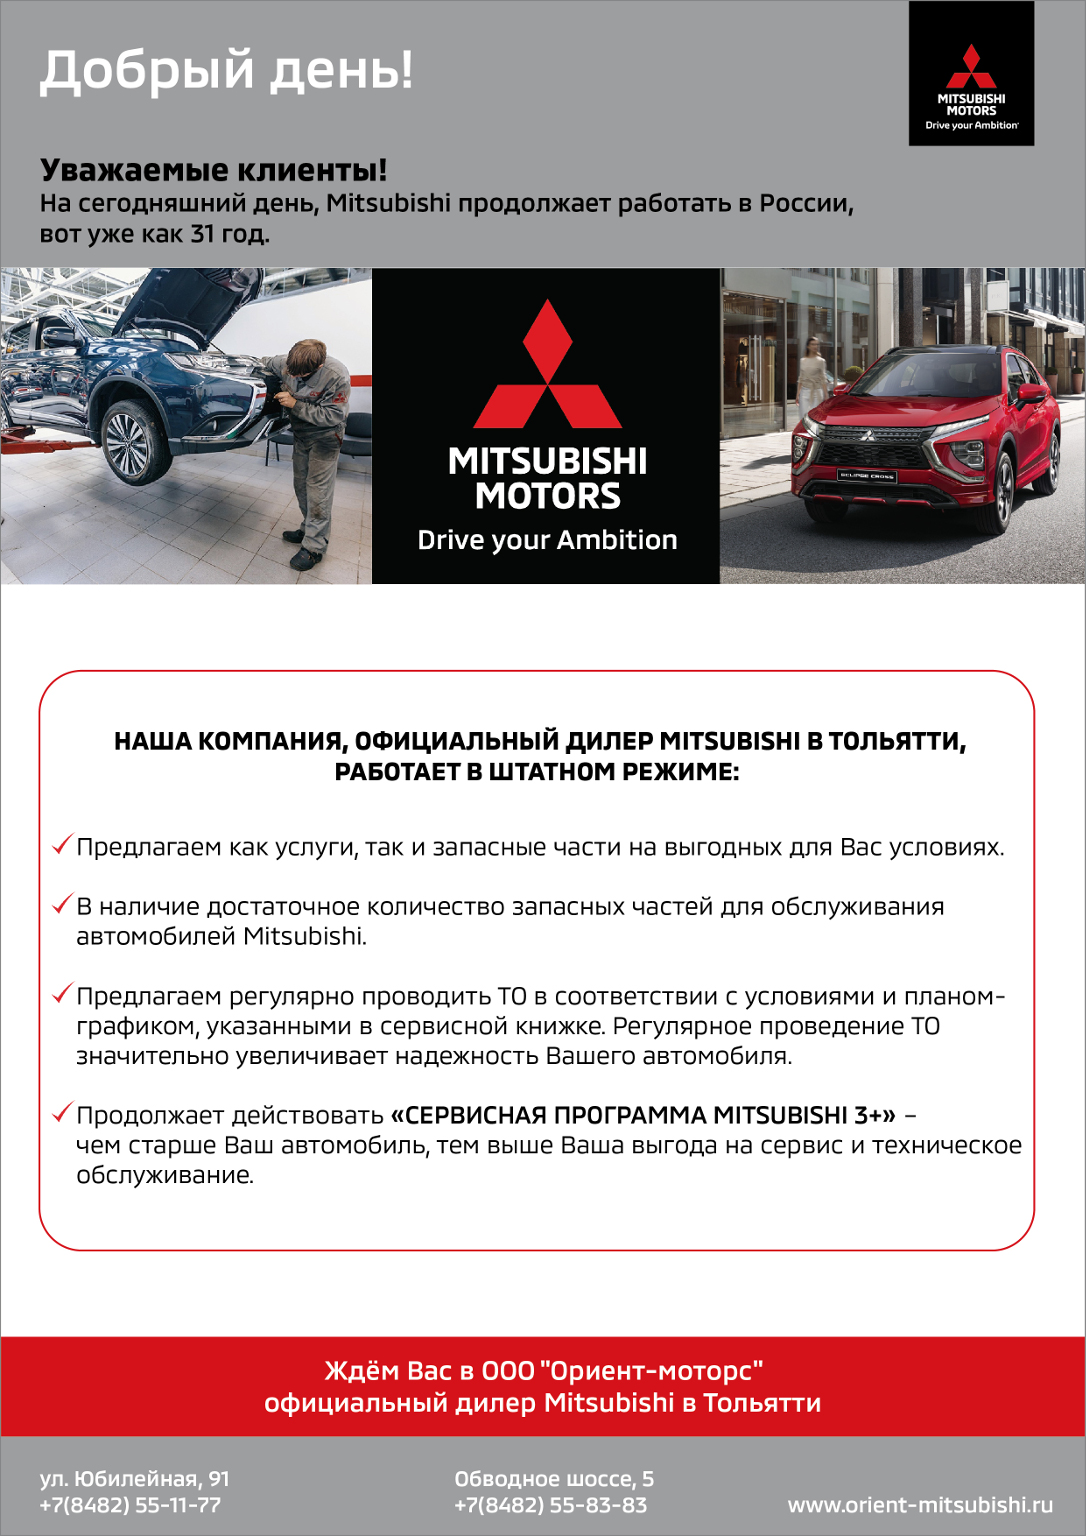 Mitsubishi продолжает работать в России